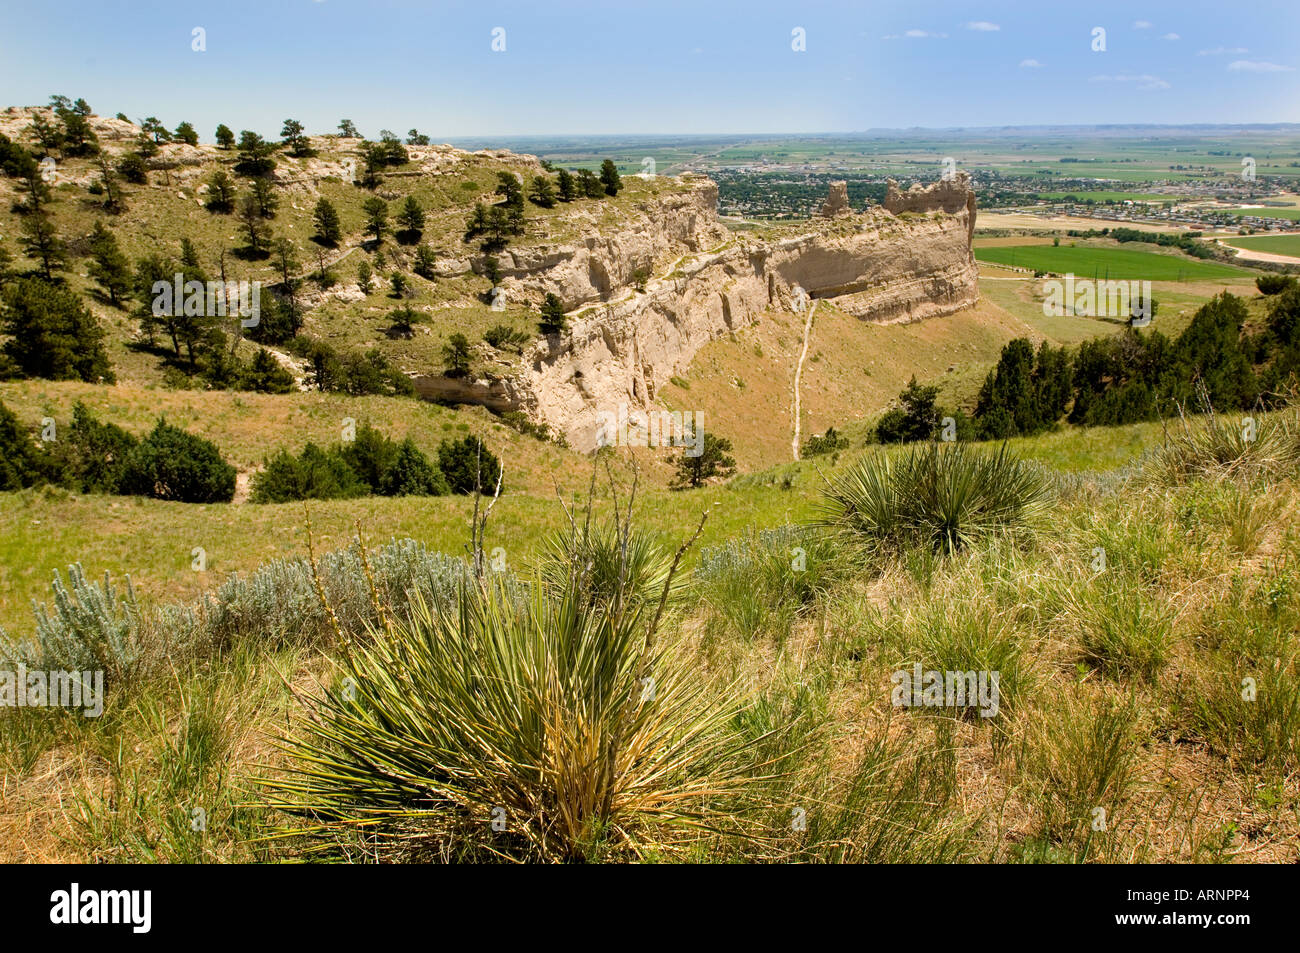 Vista panoramica del buttes nelle colline di sabbia area della Northwestern Nebraska con città di Scottsbluff in background Foto Stock